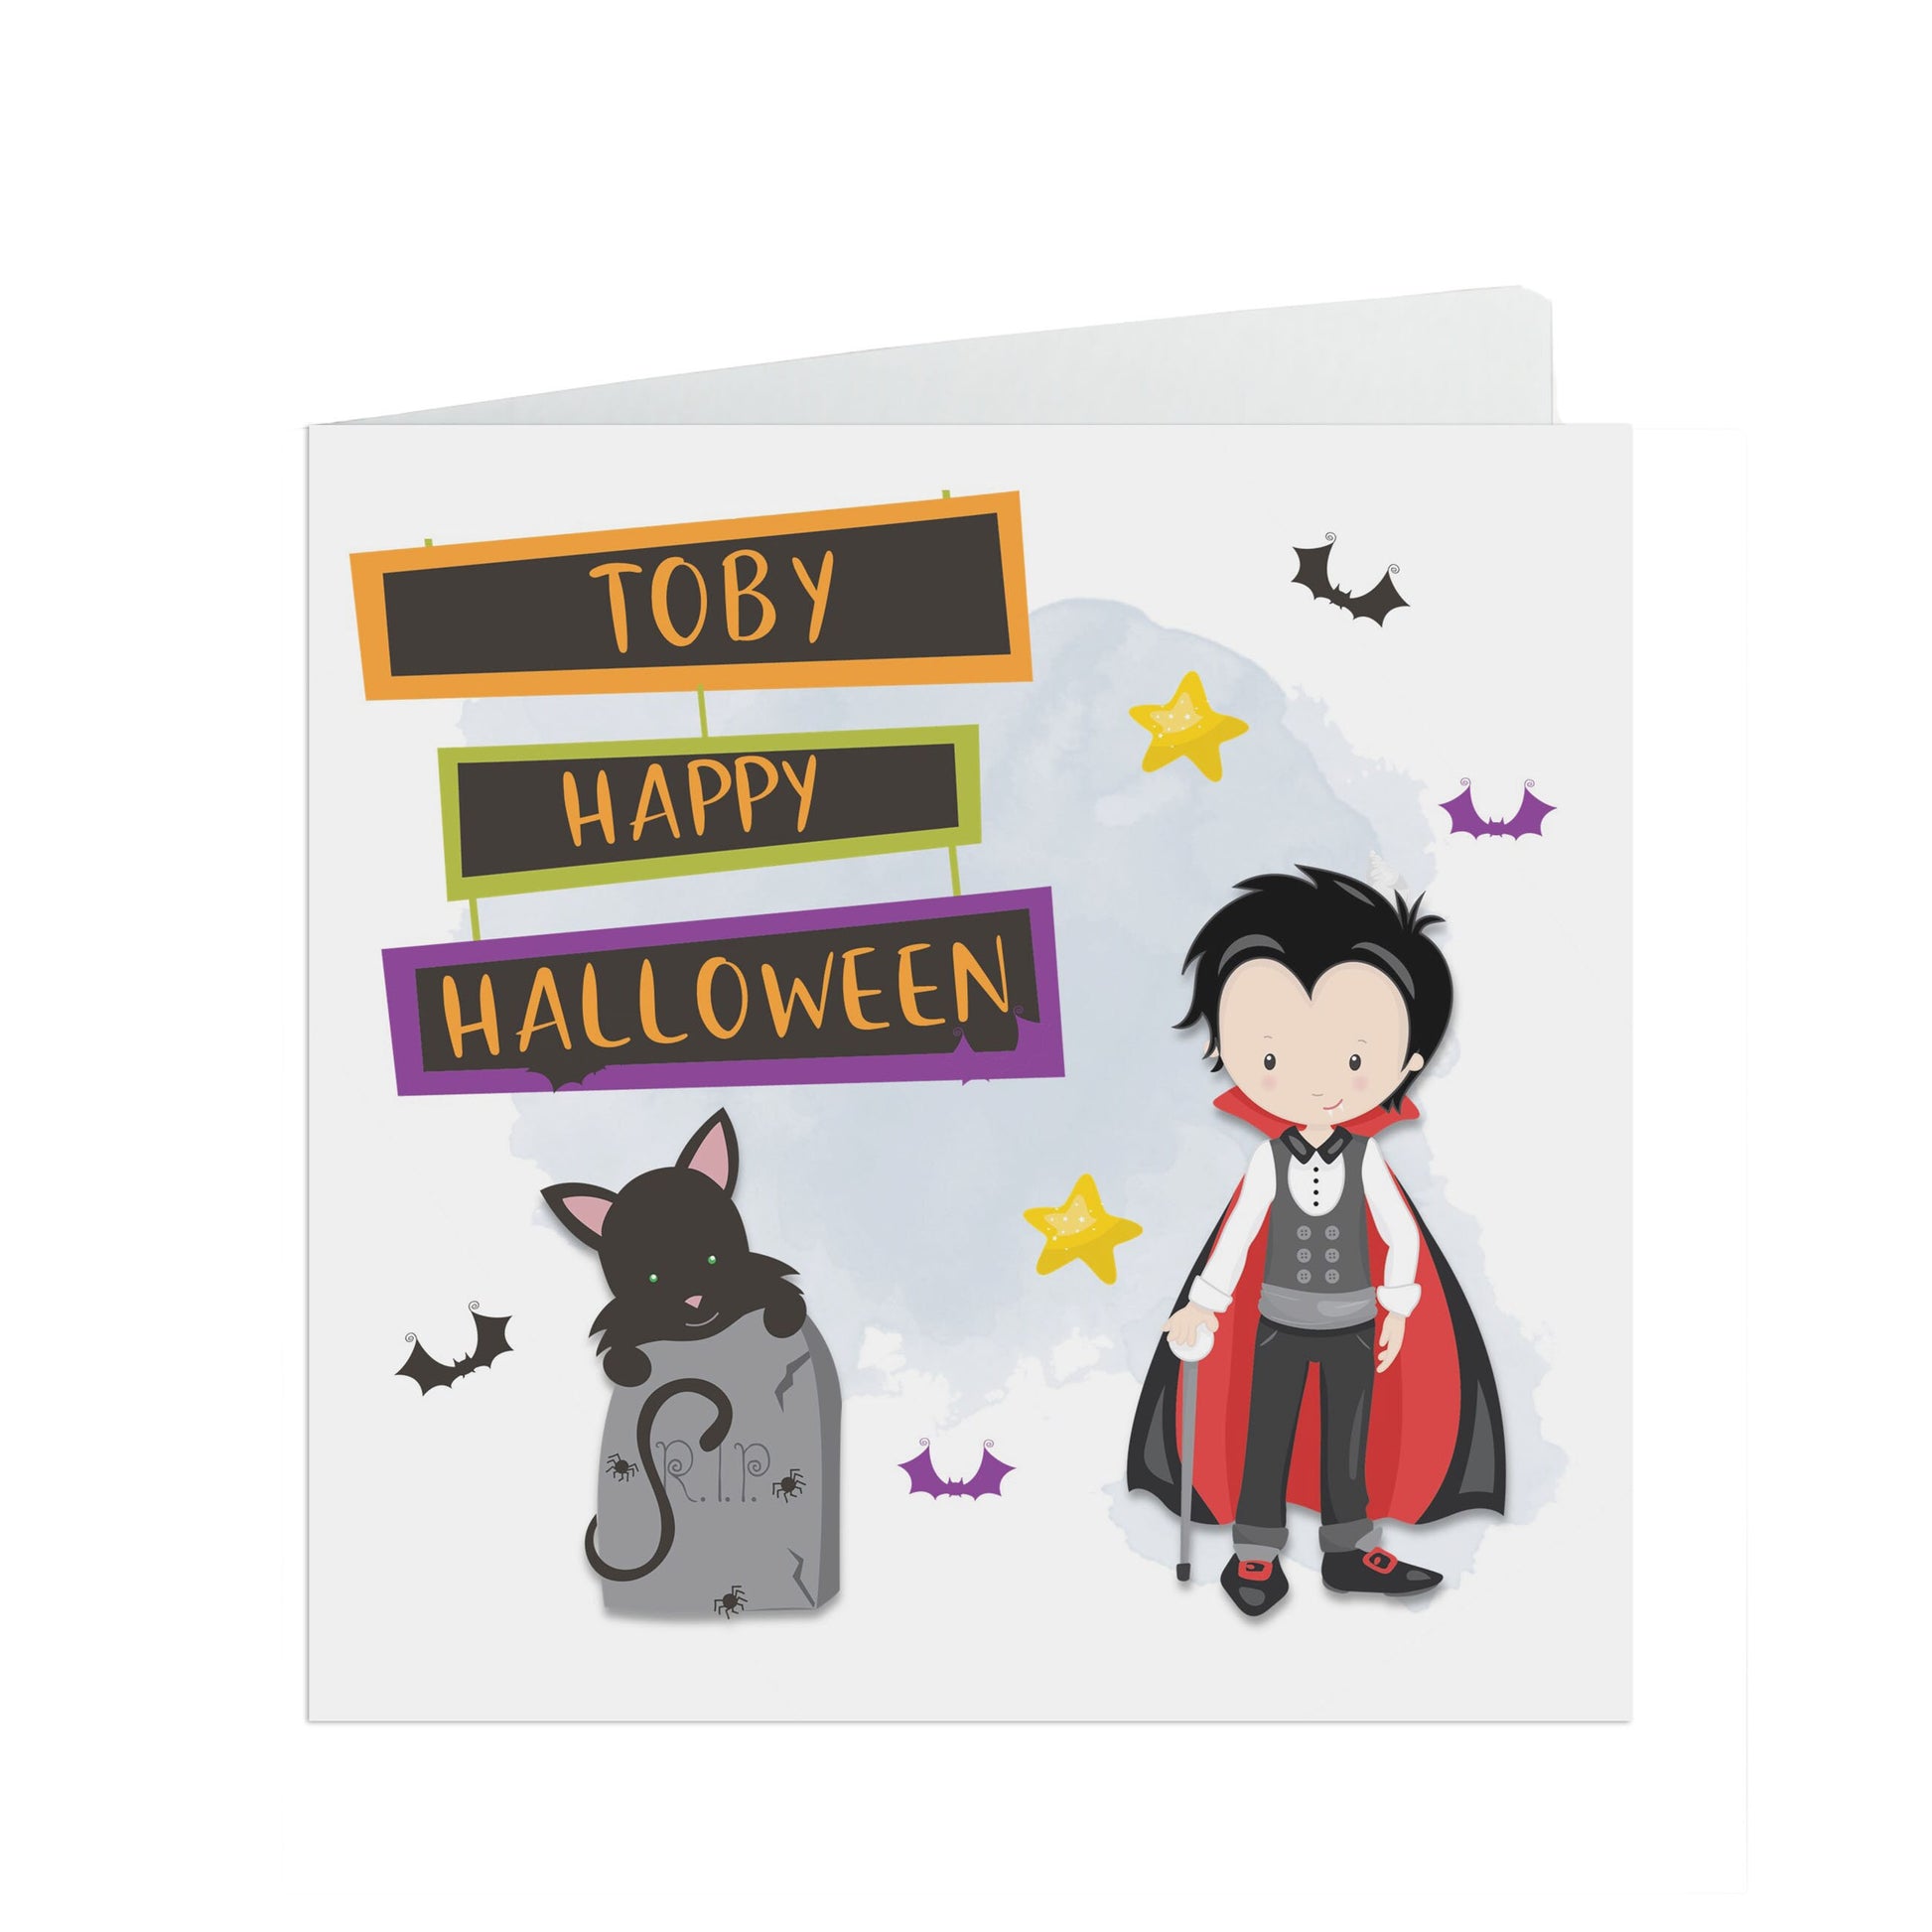 Personalised Halloween card, Cute vampire card with kraft brown envelope